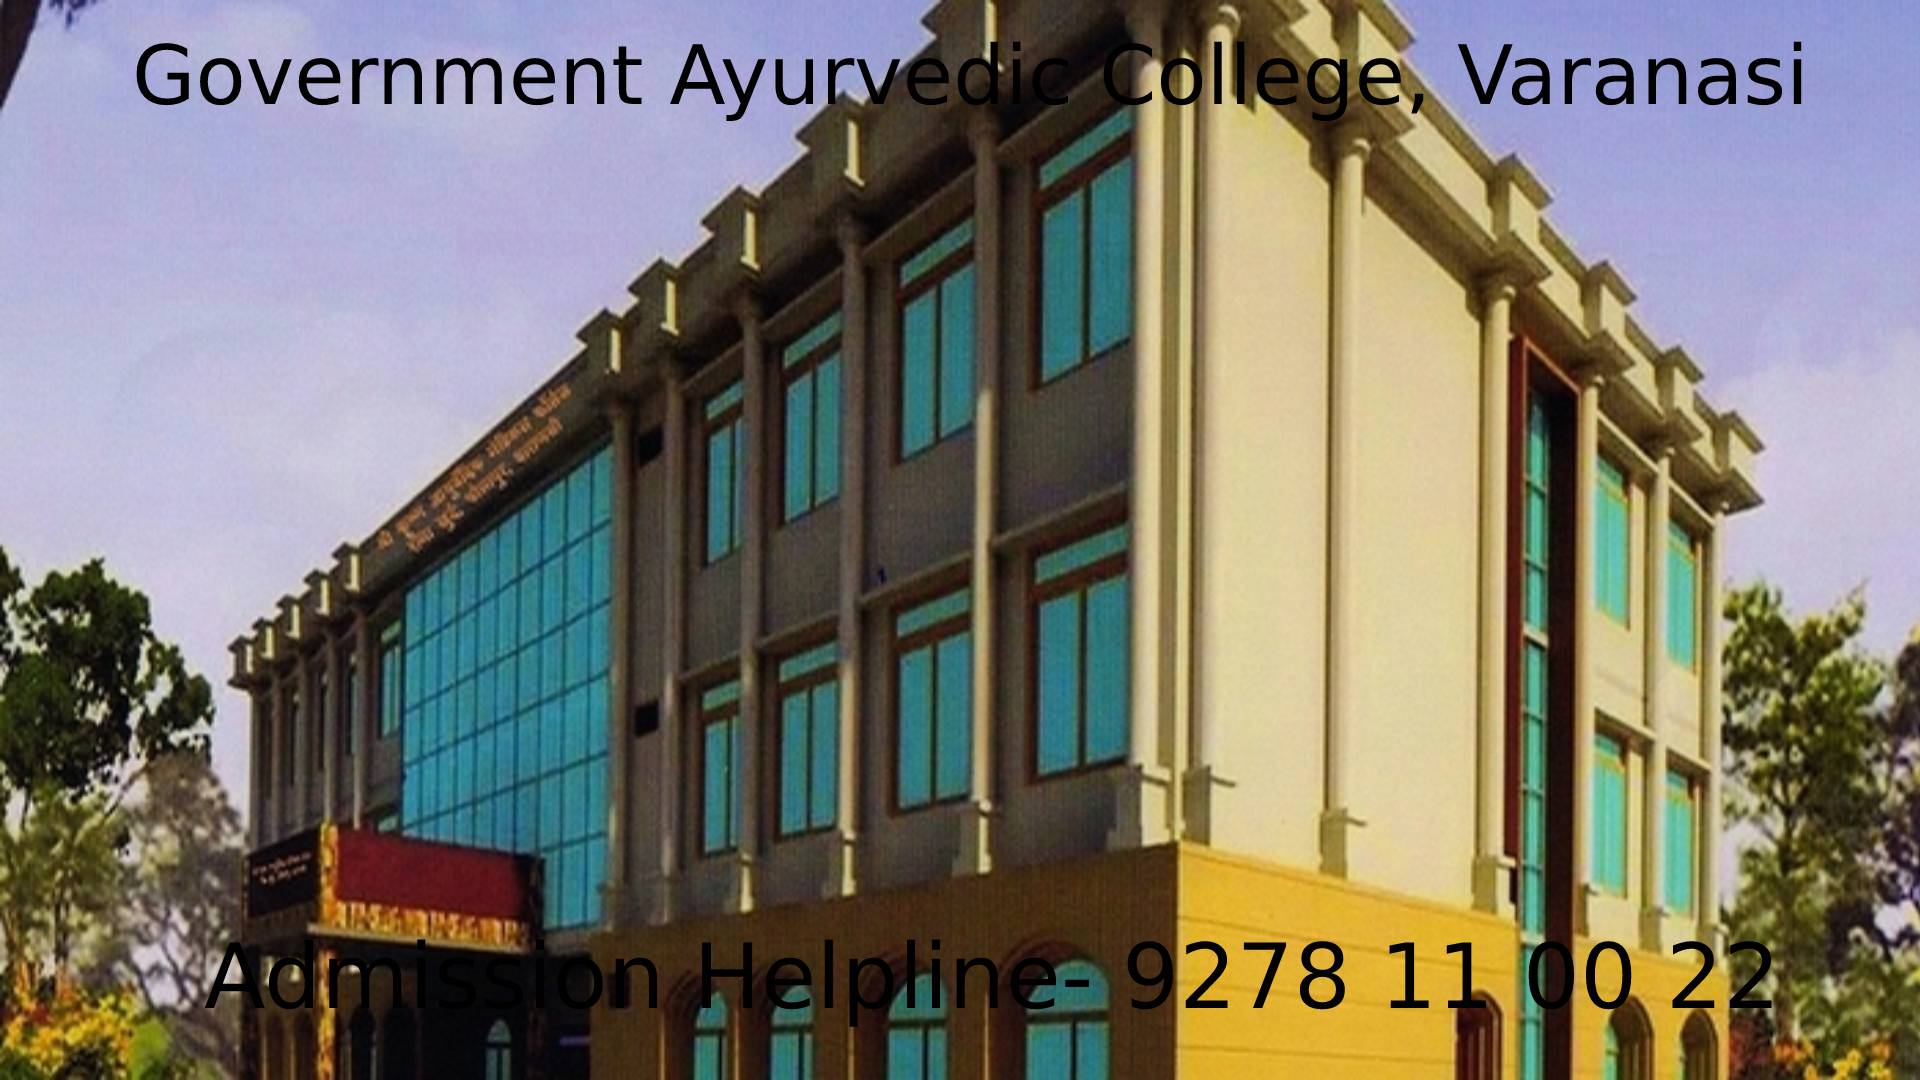 Government Ayurvedic College, Varanasi